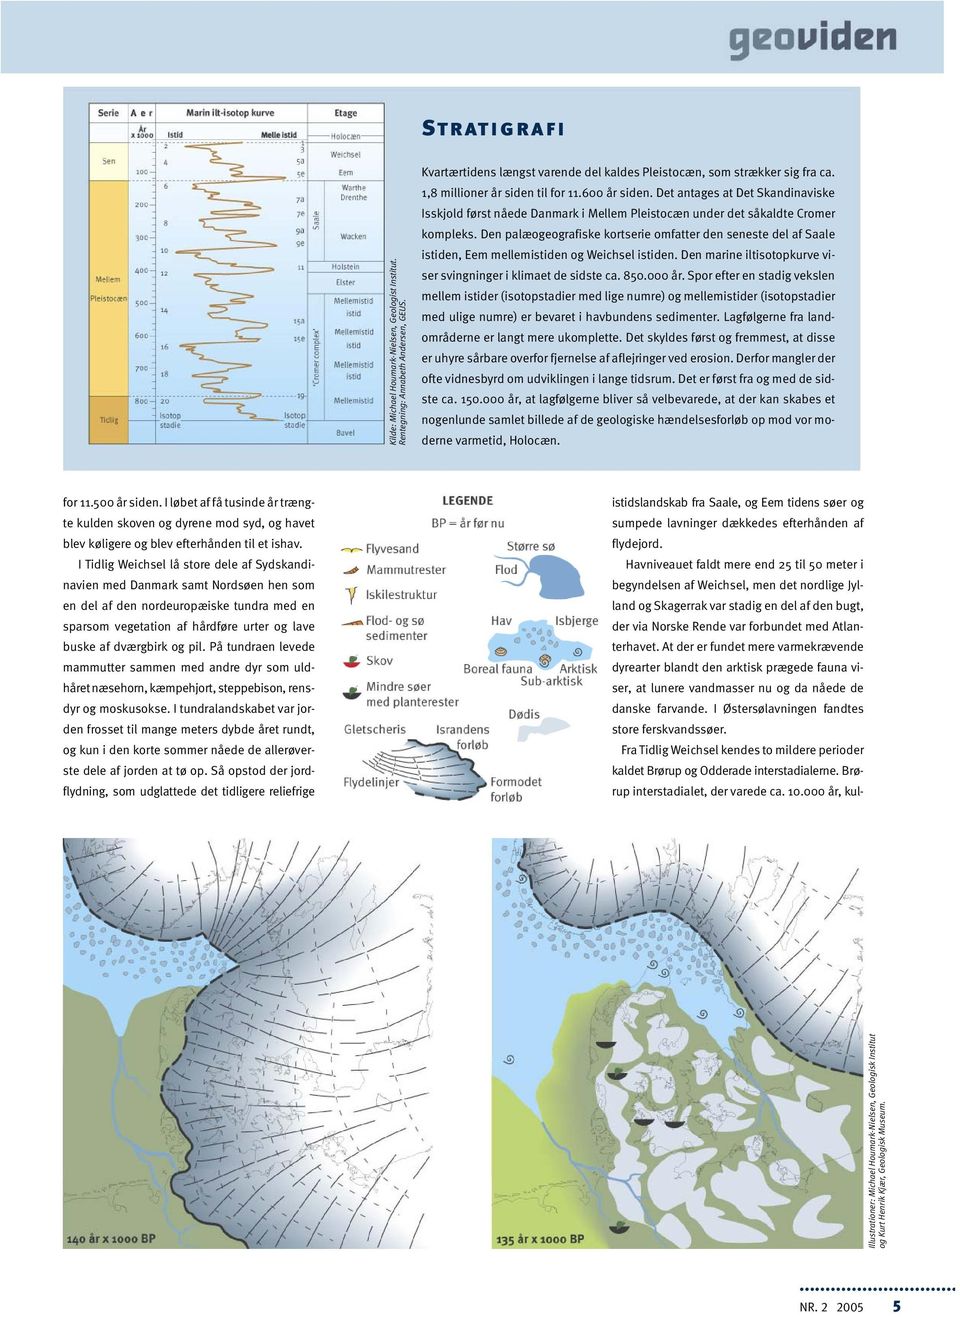 Den palæogeografiske kortserie omfatter den seneste del af Saale istiden, Eem mellemistiden og Weichsel istiden. Den marine iltisotopkurve viser svingninger i klimaet de sidste ca. 850.000 år.